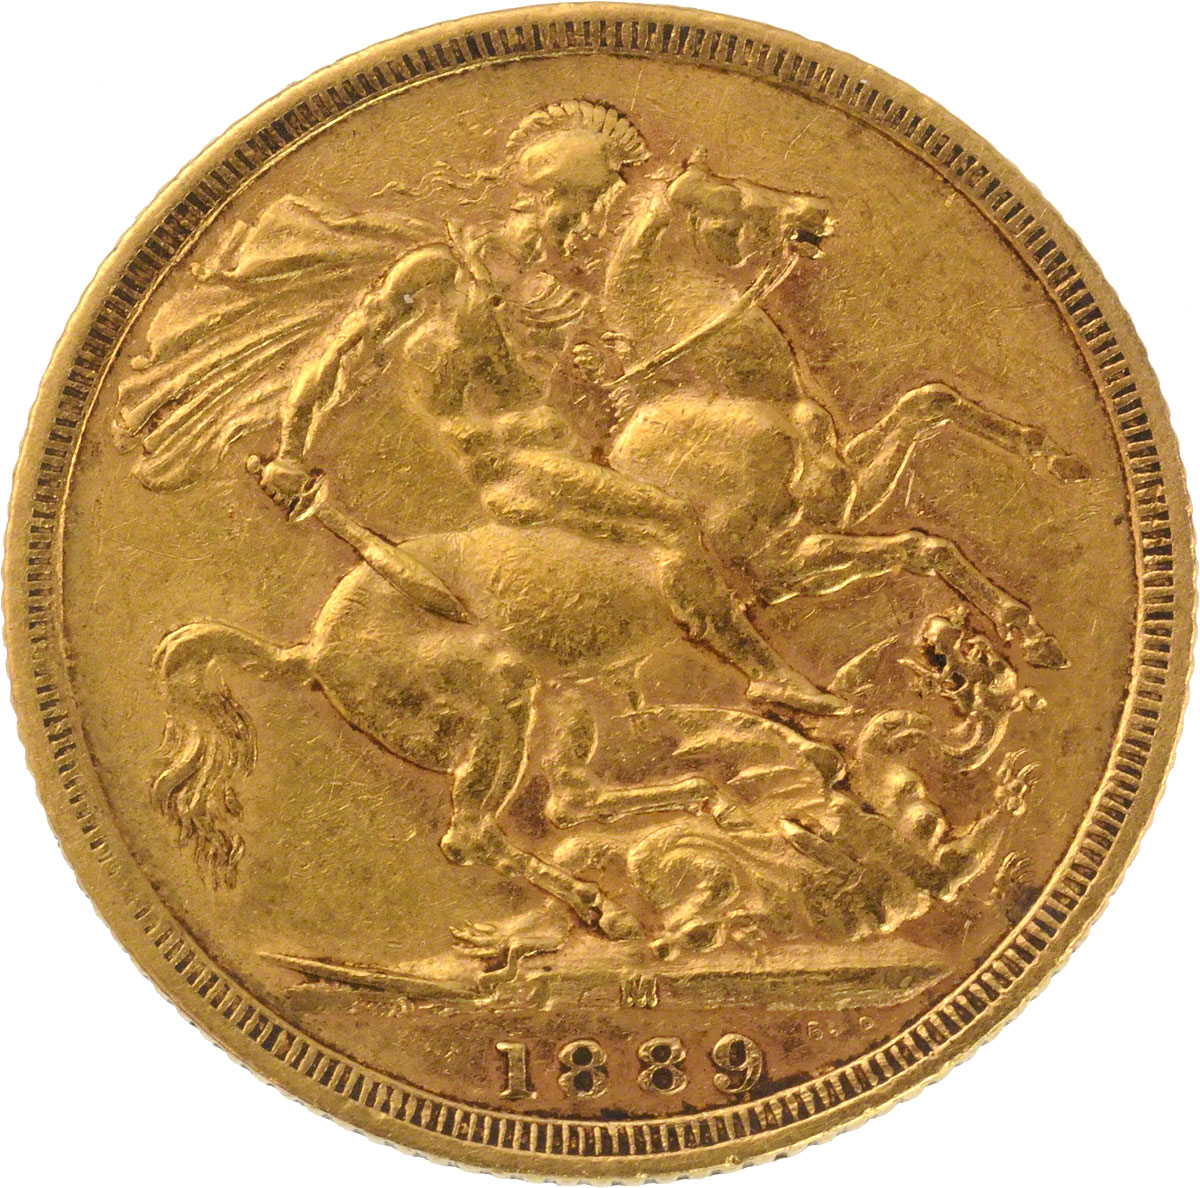 1889 Βικτώρια (Νομισματοκοπείο Μελβούρνης)